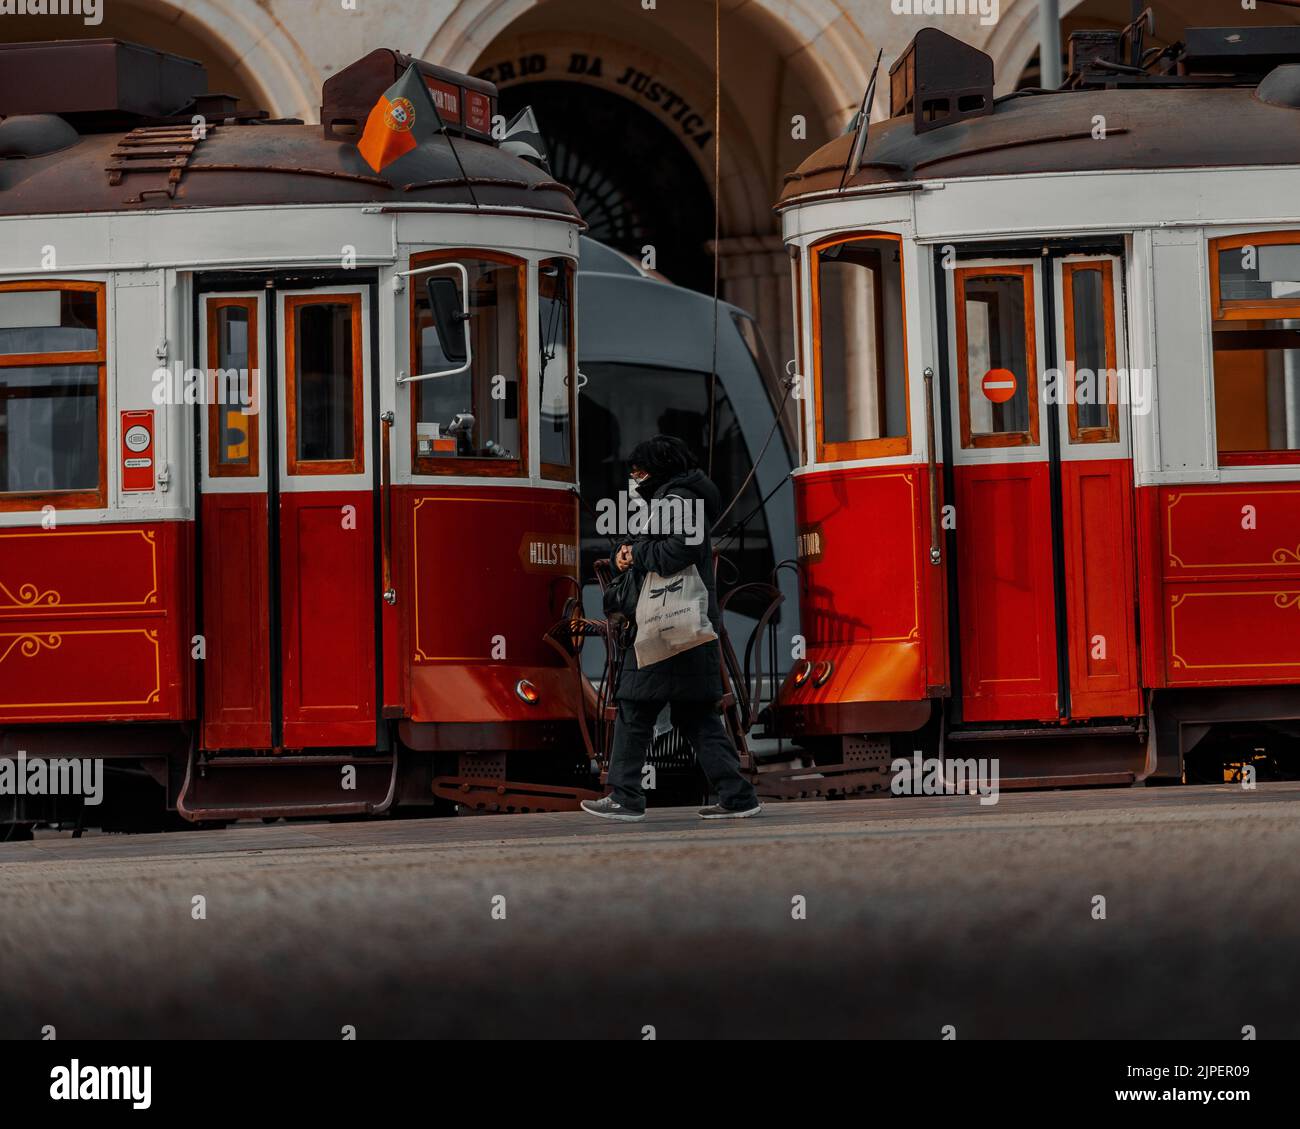 Eine Nahaufnahme von zwei roten Straßenbahnen, die gegeneinander laufen, mit einer Person, die vor Lissabon vorbeiläuft Stockfoto